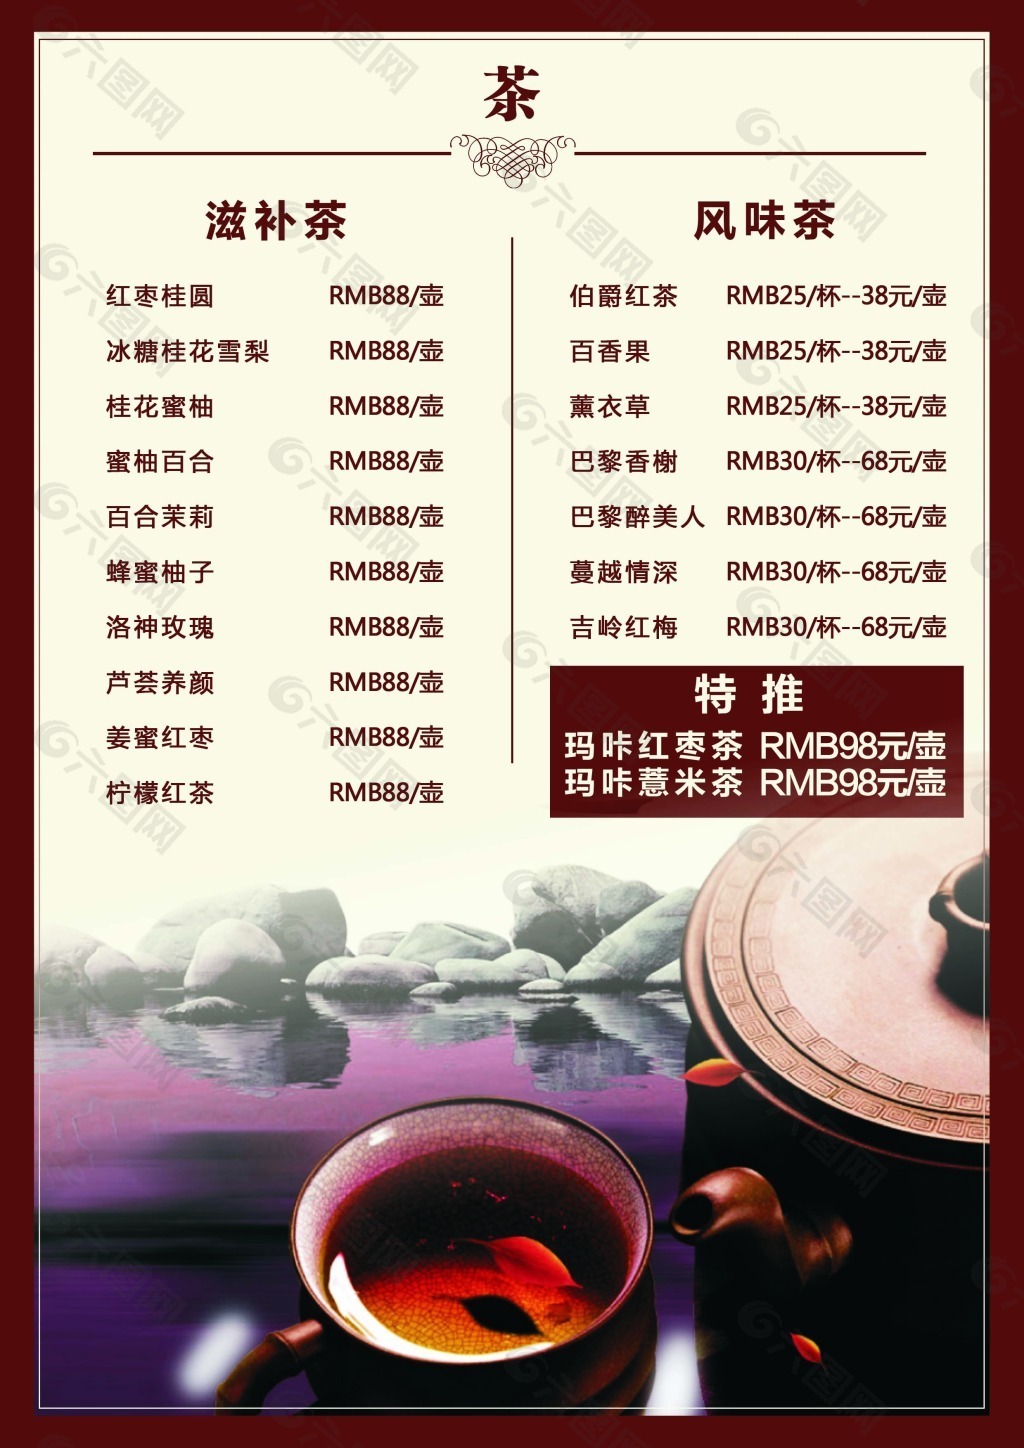 郑州城墙根茶馆价目表图片